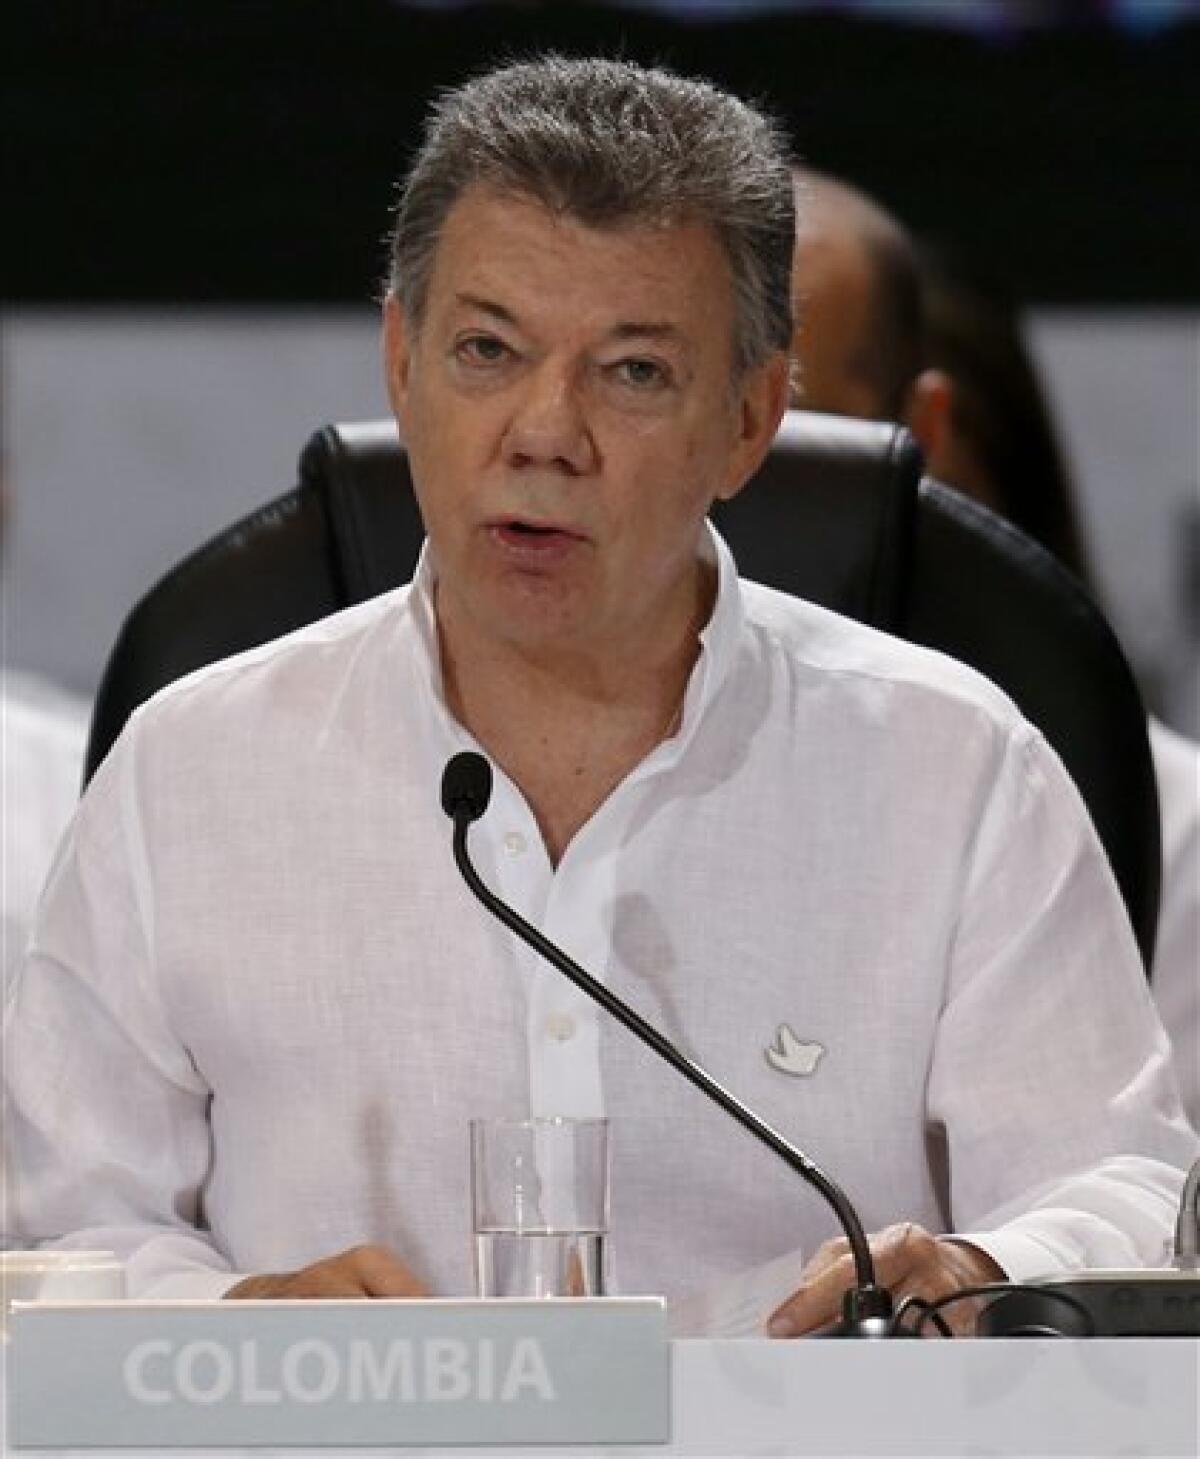 El refrendo de los nuevos acuerdos de paz en Colombia puede no ser mediante un nuevo referéndum, sino en "cabildos abiertos"; esto es, concejos municipales con participación directa de los ciudadanos, según declaró hoy en Madrid el negociador gubernamental Yesid Reyes.